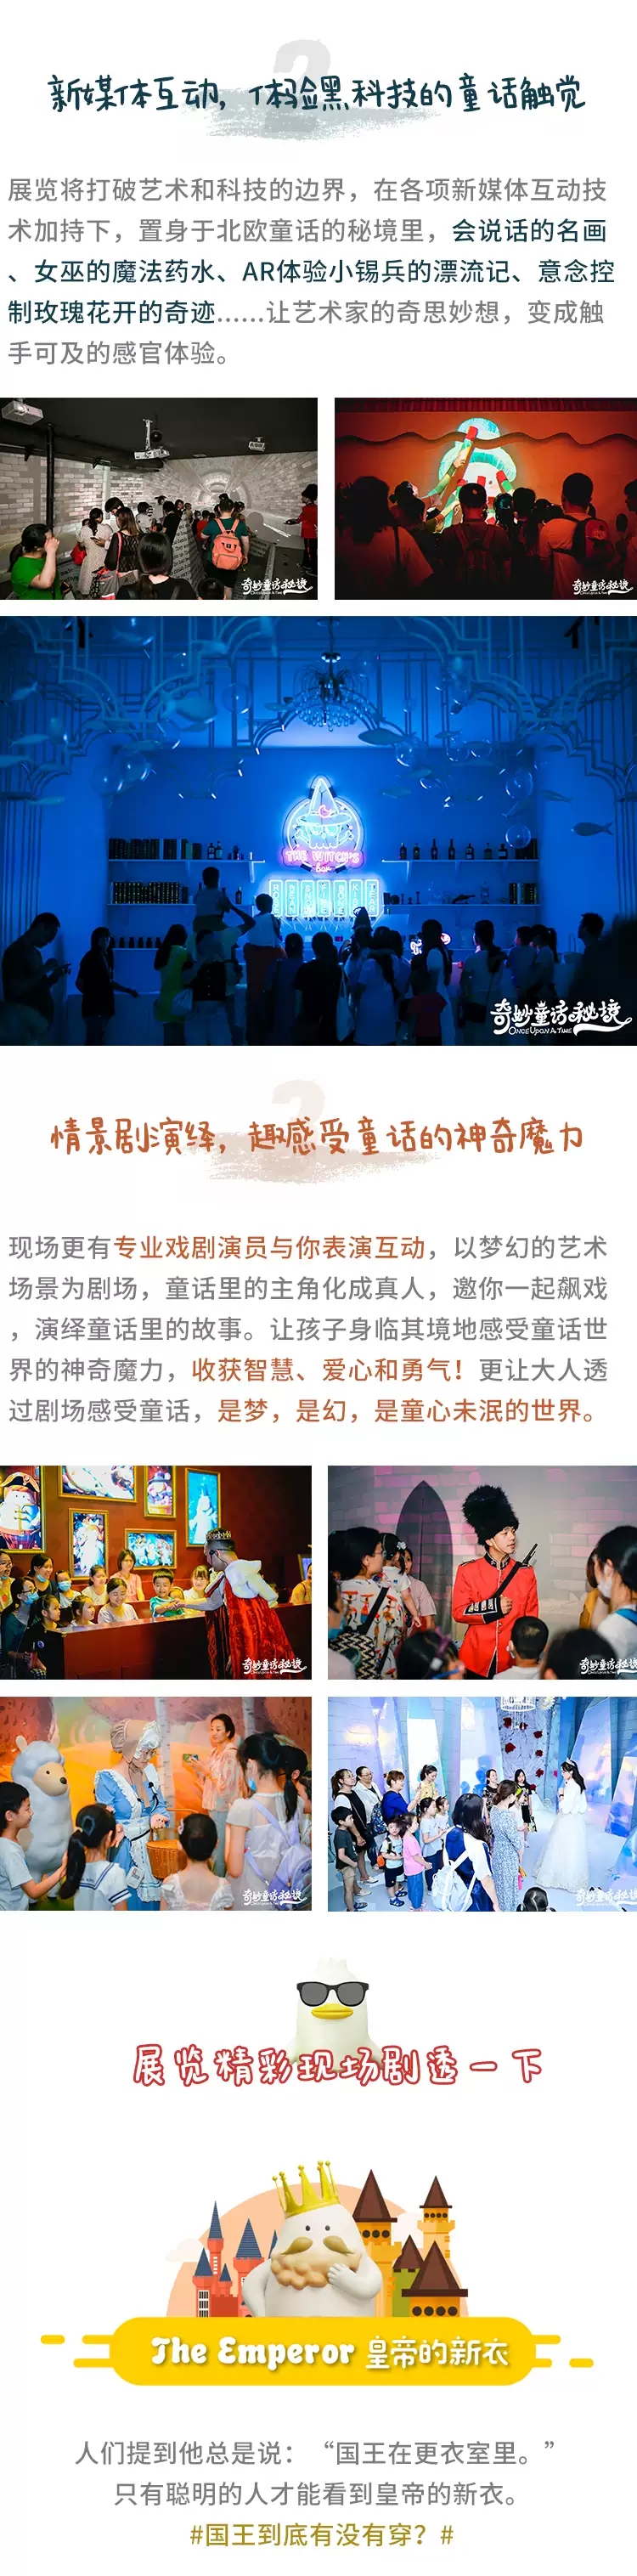 2020深圳奇妙童话秘境